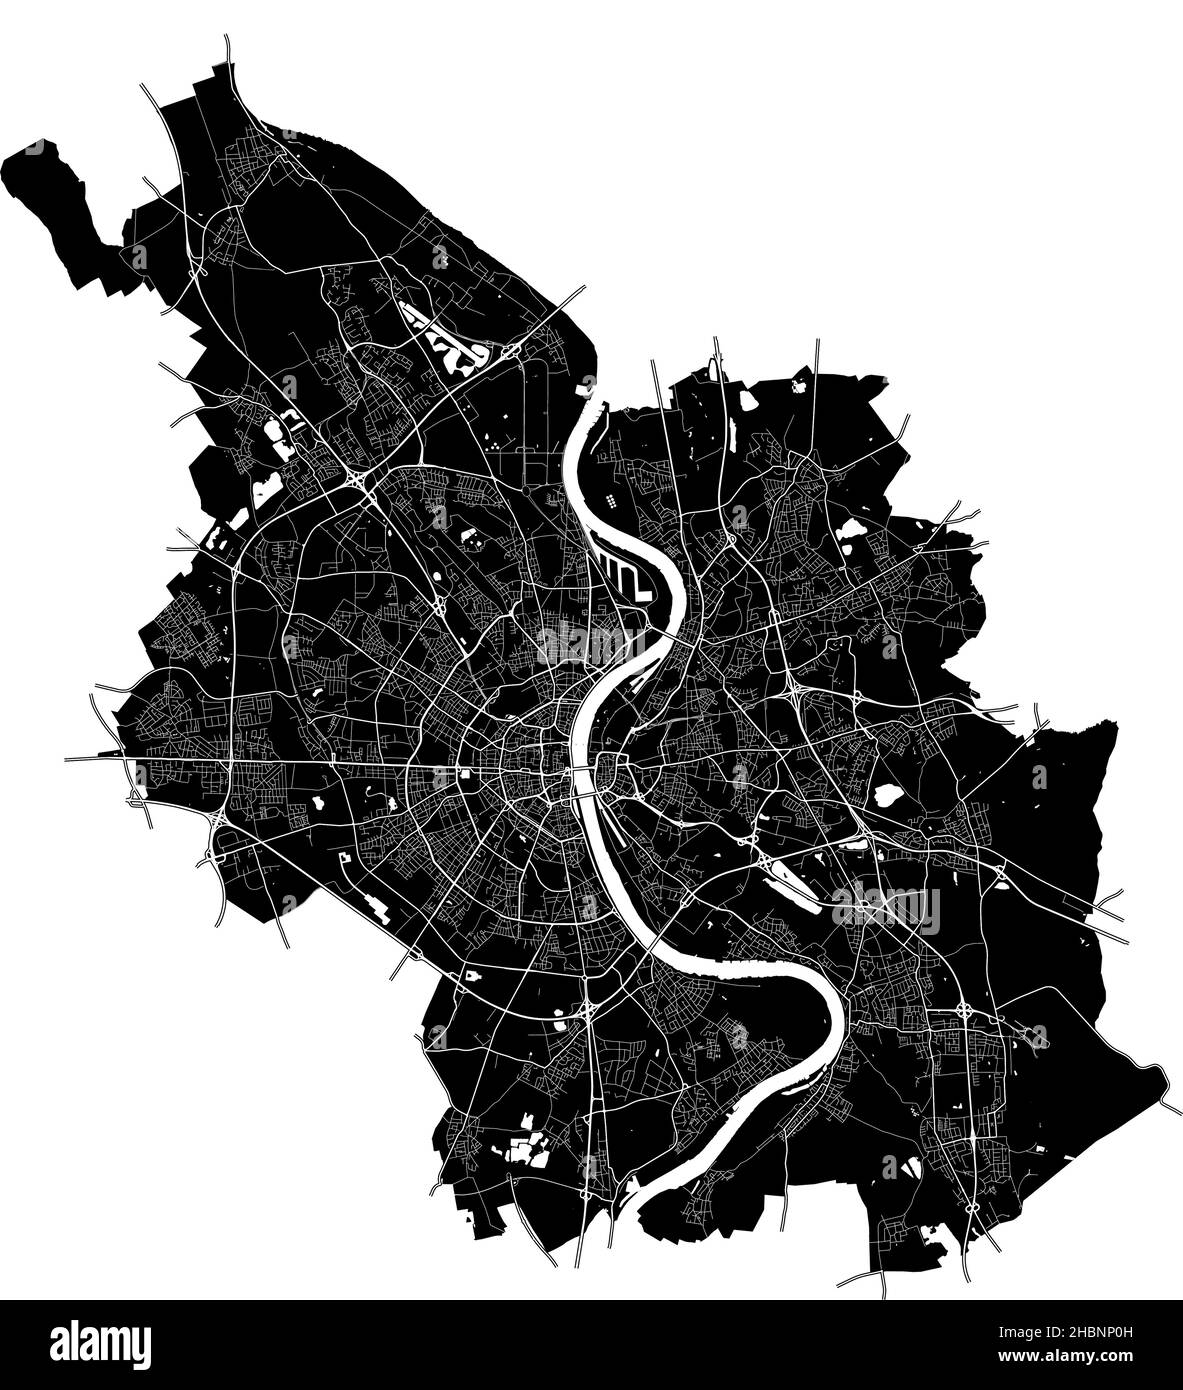 Colonia, Renania del Norte-Westfalia, Alemania, mapa vectorial de alta resolución con límites urbanos y caminos editables. El mapa de la ciudad fue dibujado con wh Ilustración del Vector